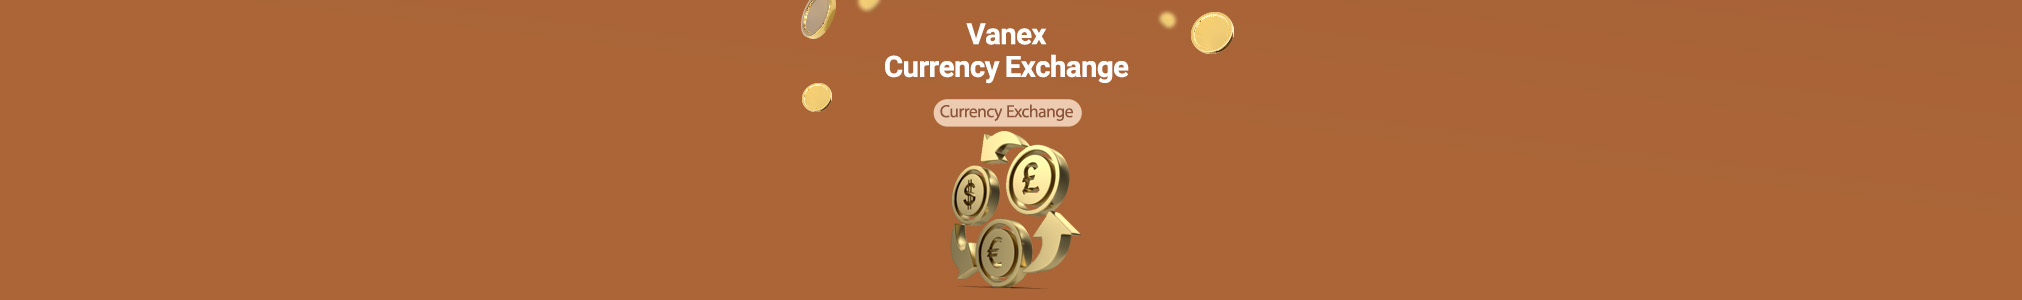 Vanex Currency Exchange